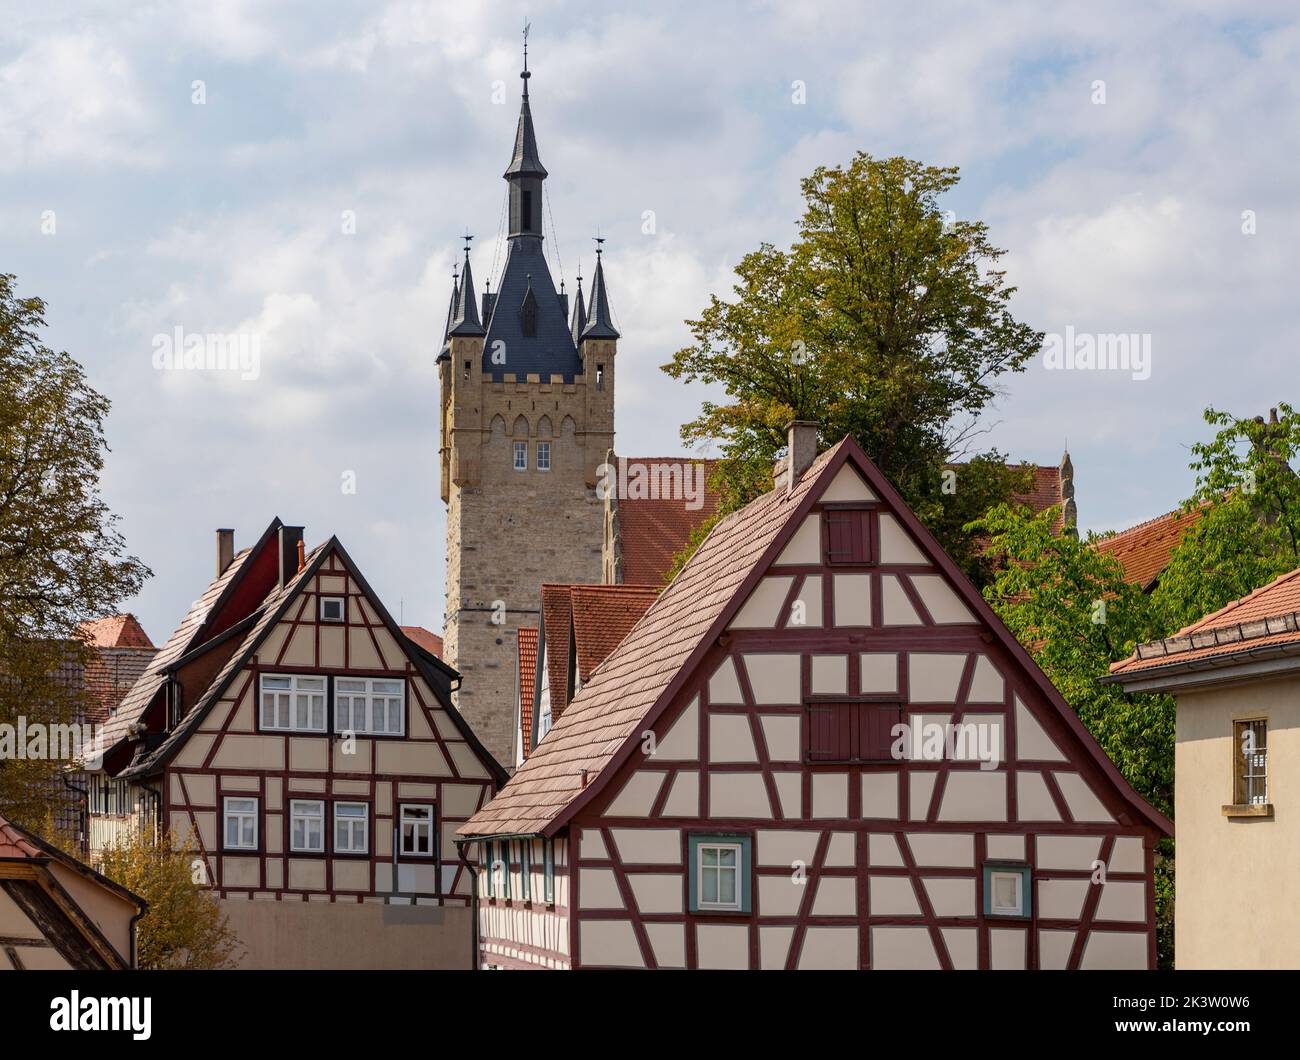 Impresión de Bad Wimpfen, una histórica ciudad balneario en el distrito de Heilbronn en la región de Baden-Wuerttemberg, al sur de Alemania Foto de stock